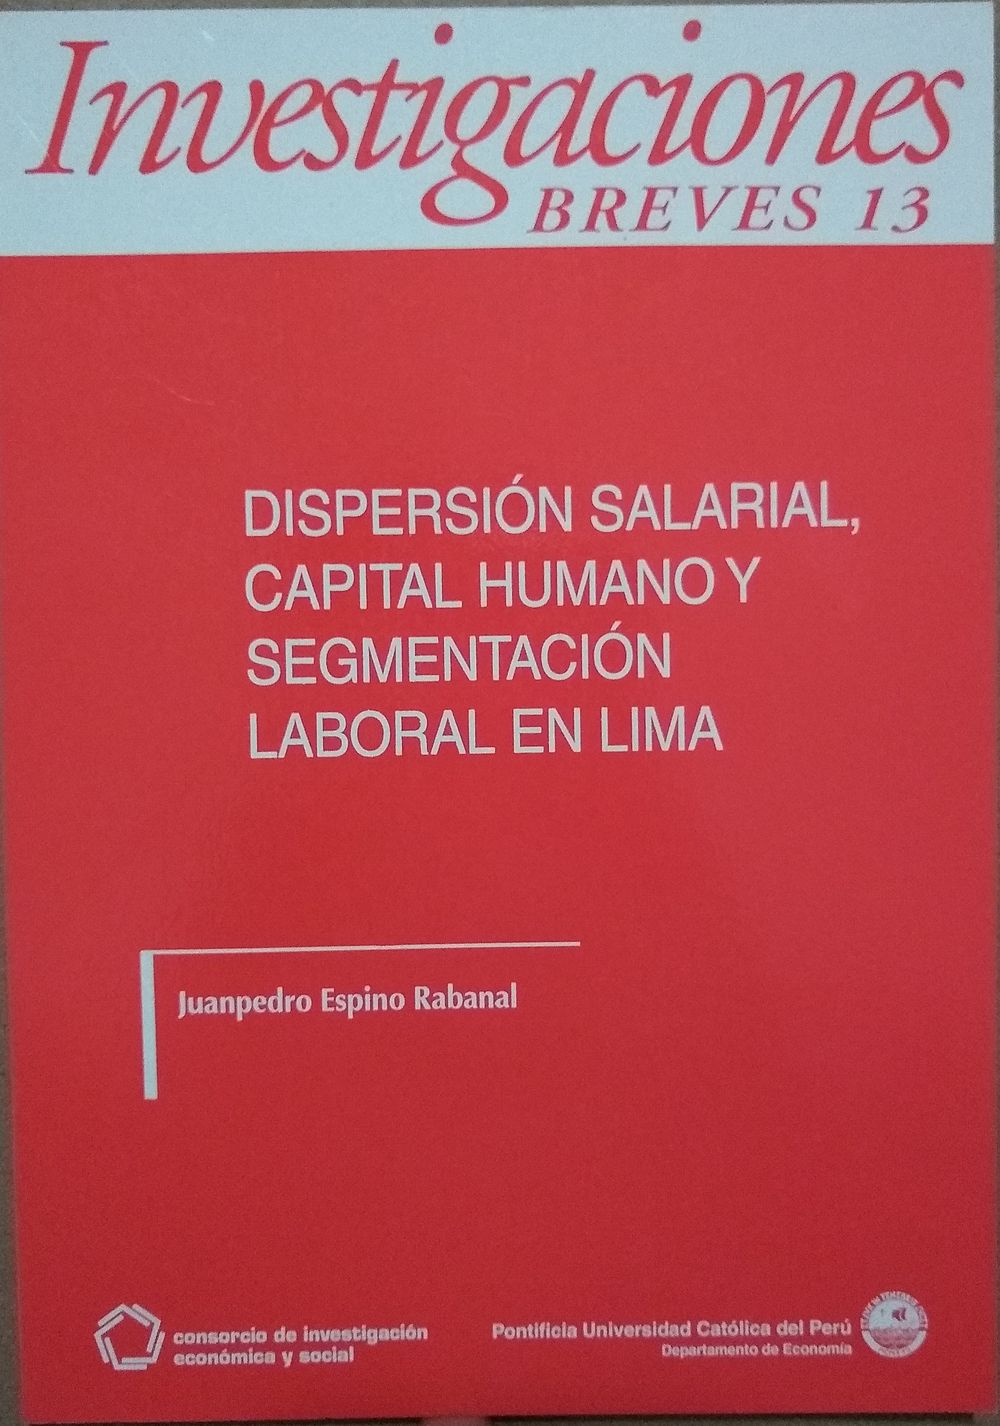 Dispersión salarial, capital humano y segmentación laboral en Lima